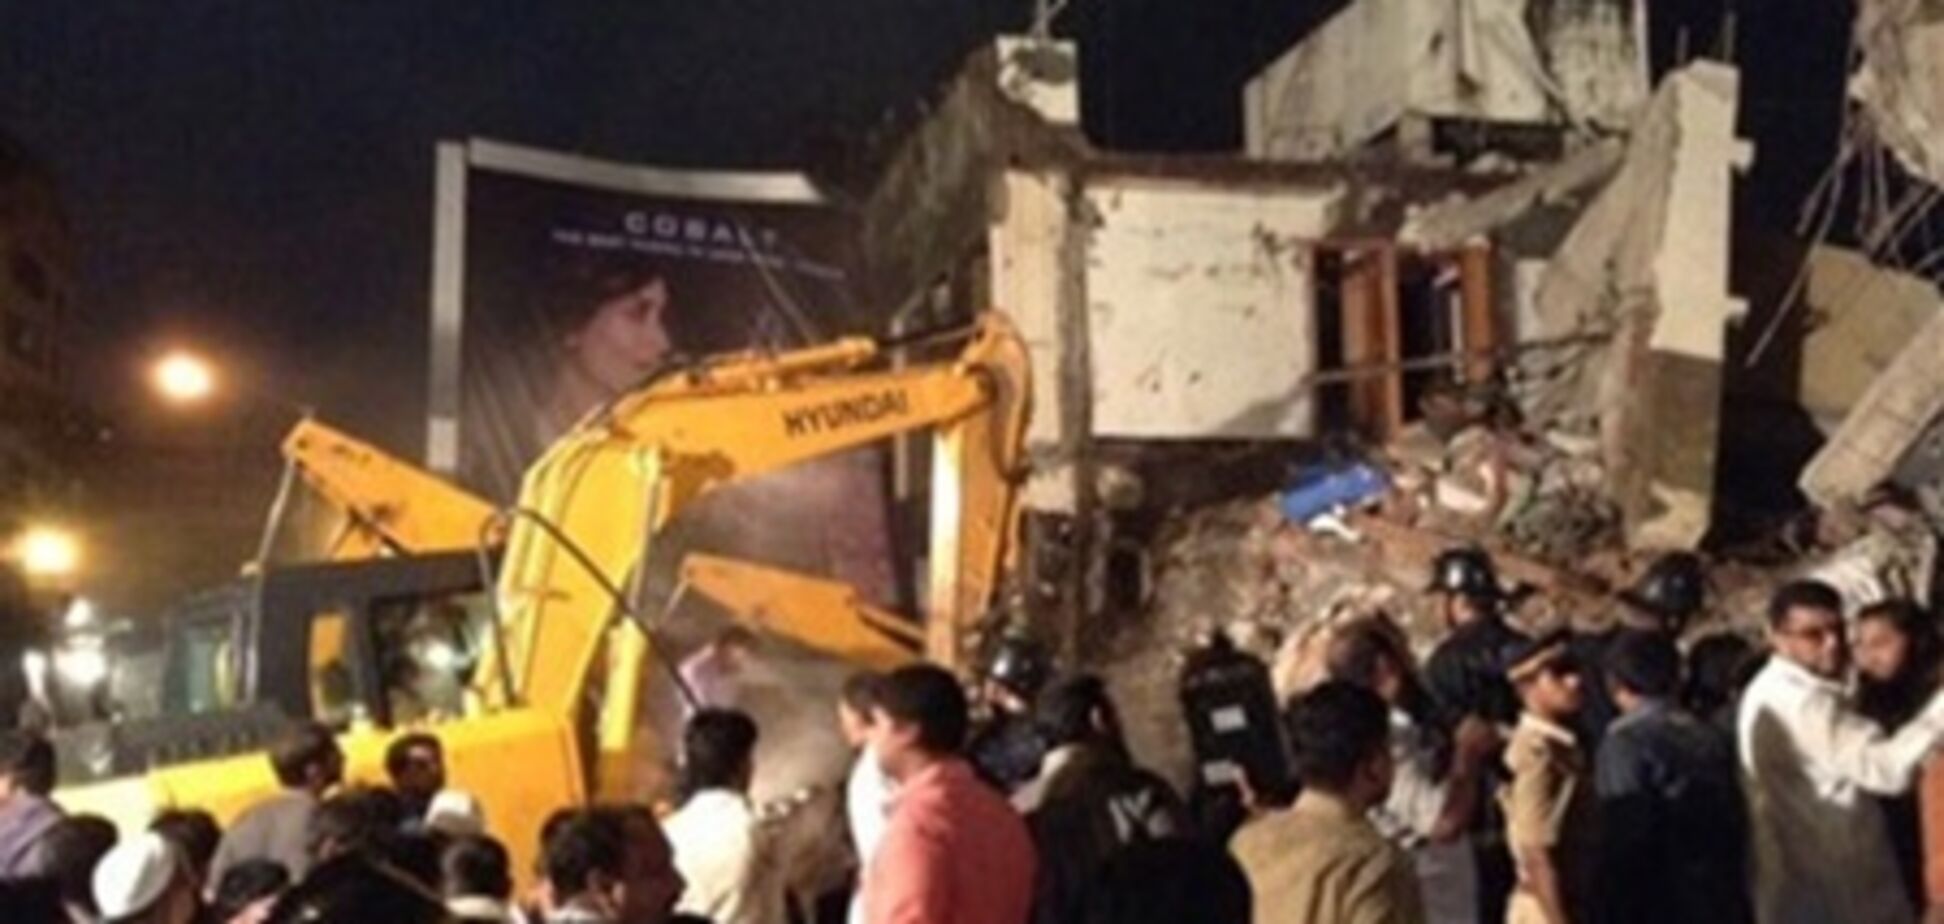 При обрушение дома в Мумбаи погиб человек